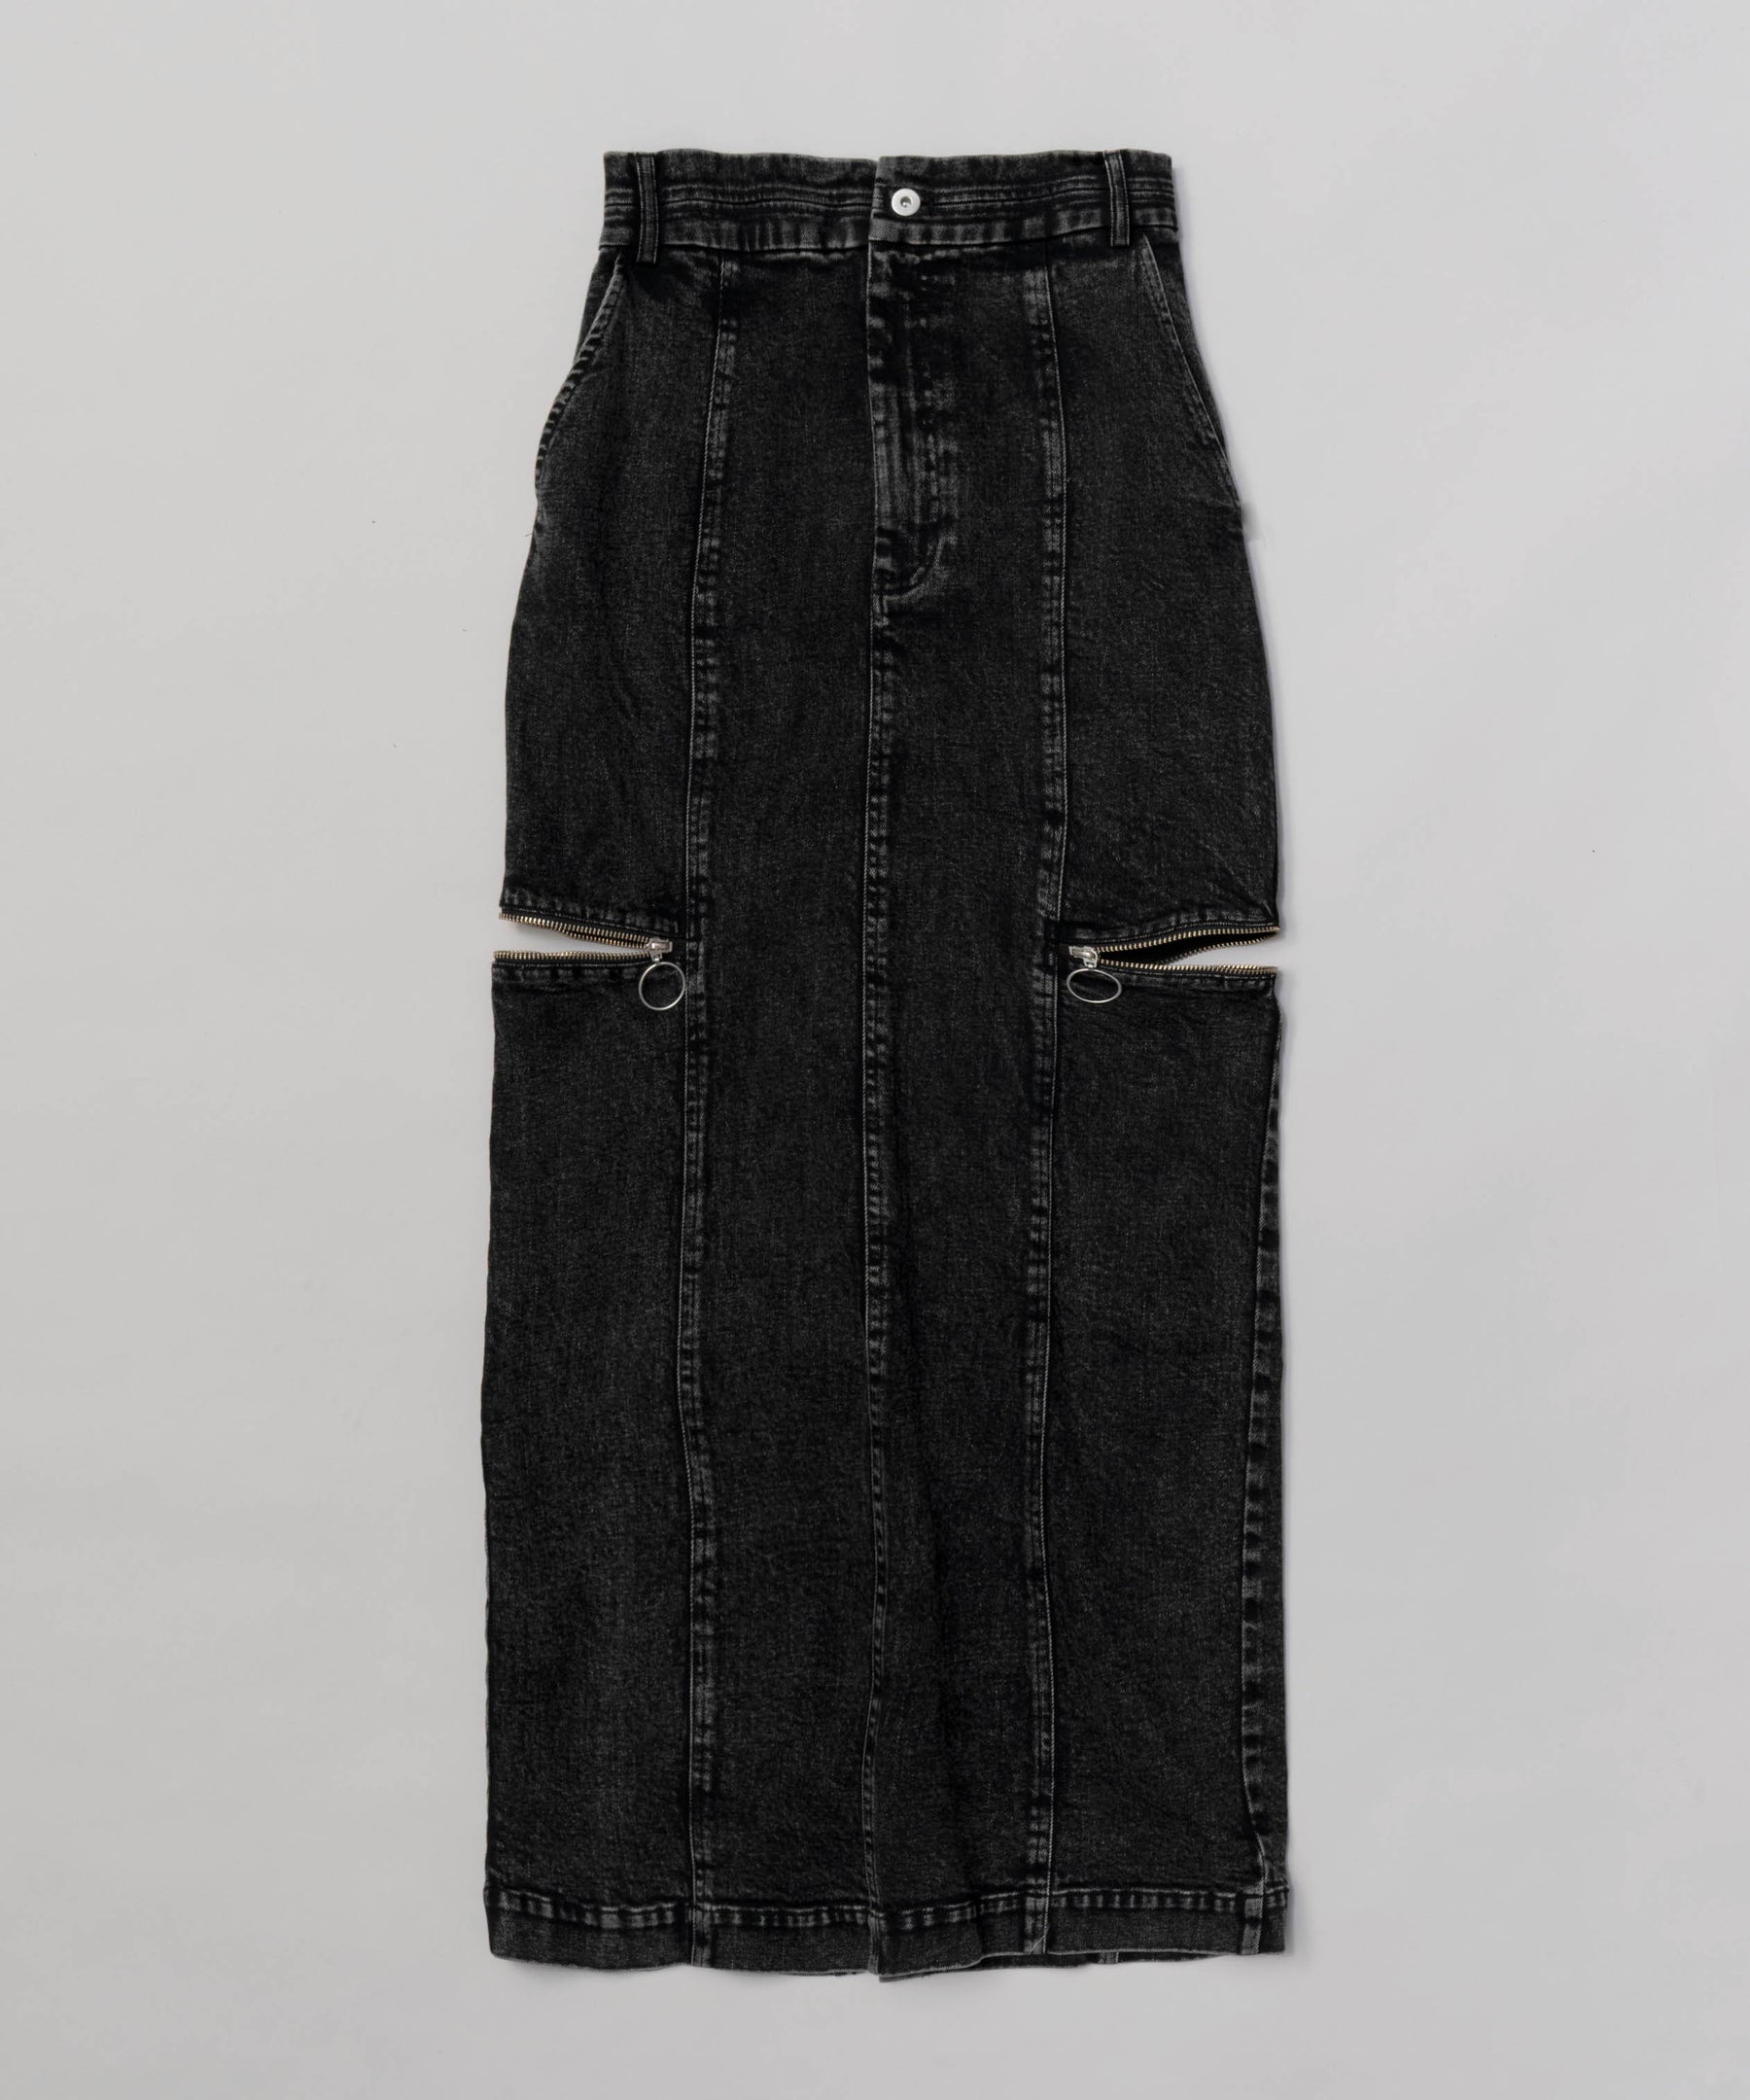 メゾンスペシャル / サイドジップタイトデニムスカート 36サイズサイズ36